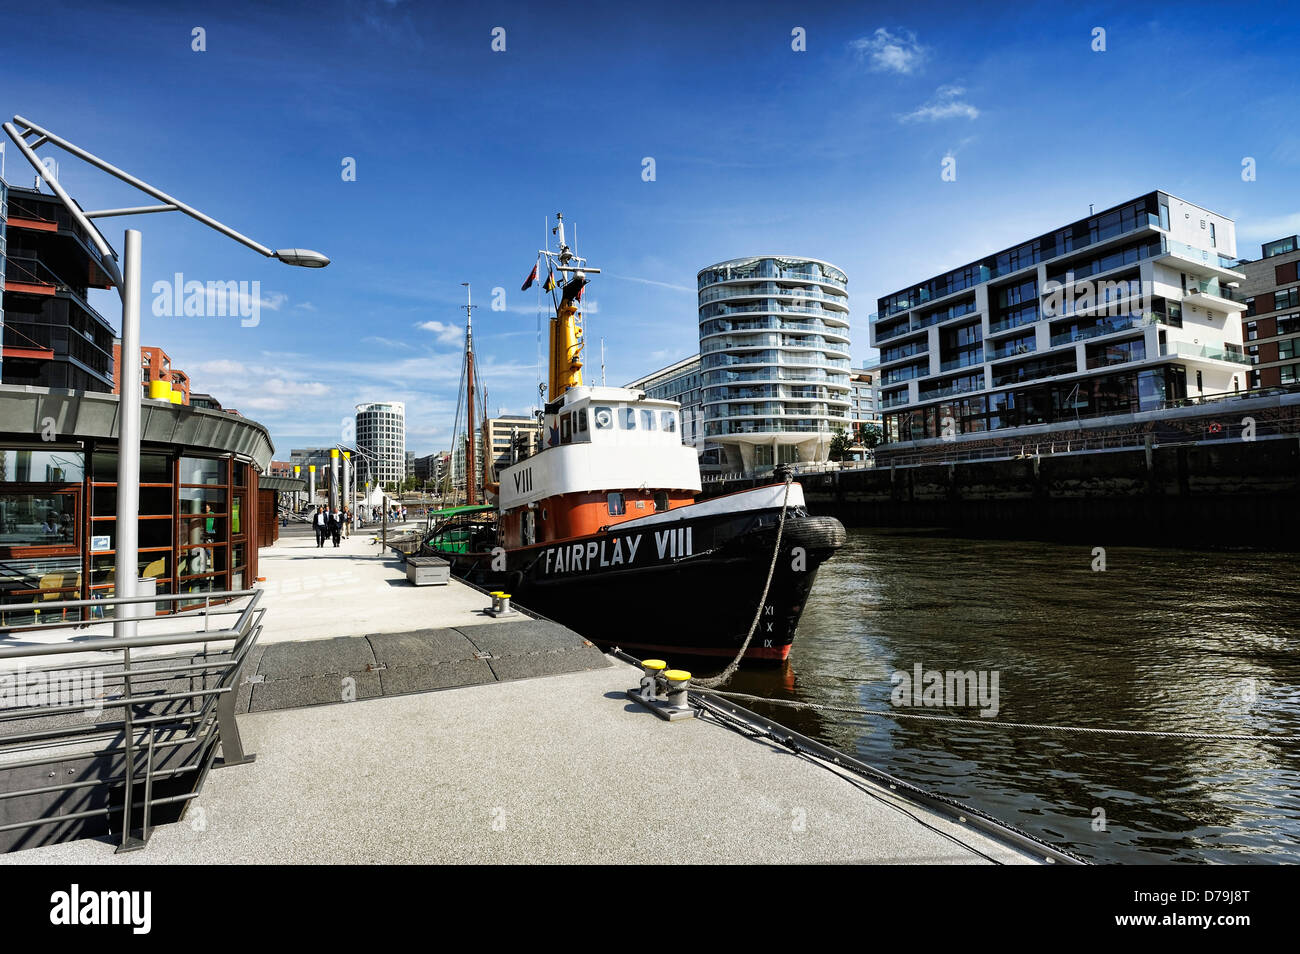 La porte de sable dans le port de la ville portuaire de Hambourg, Allemagne, Europe , Sandtorhafen von der Hafencity Hamburg, Deutschland, Eur Banque D'Images